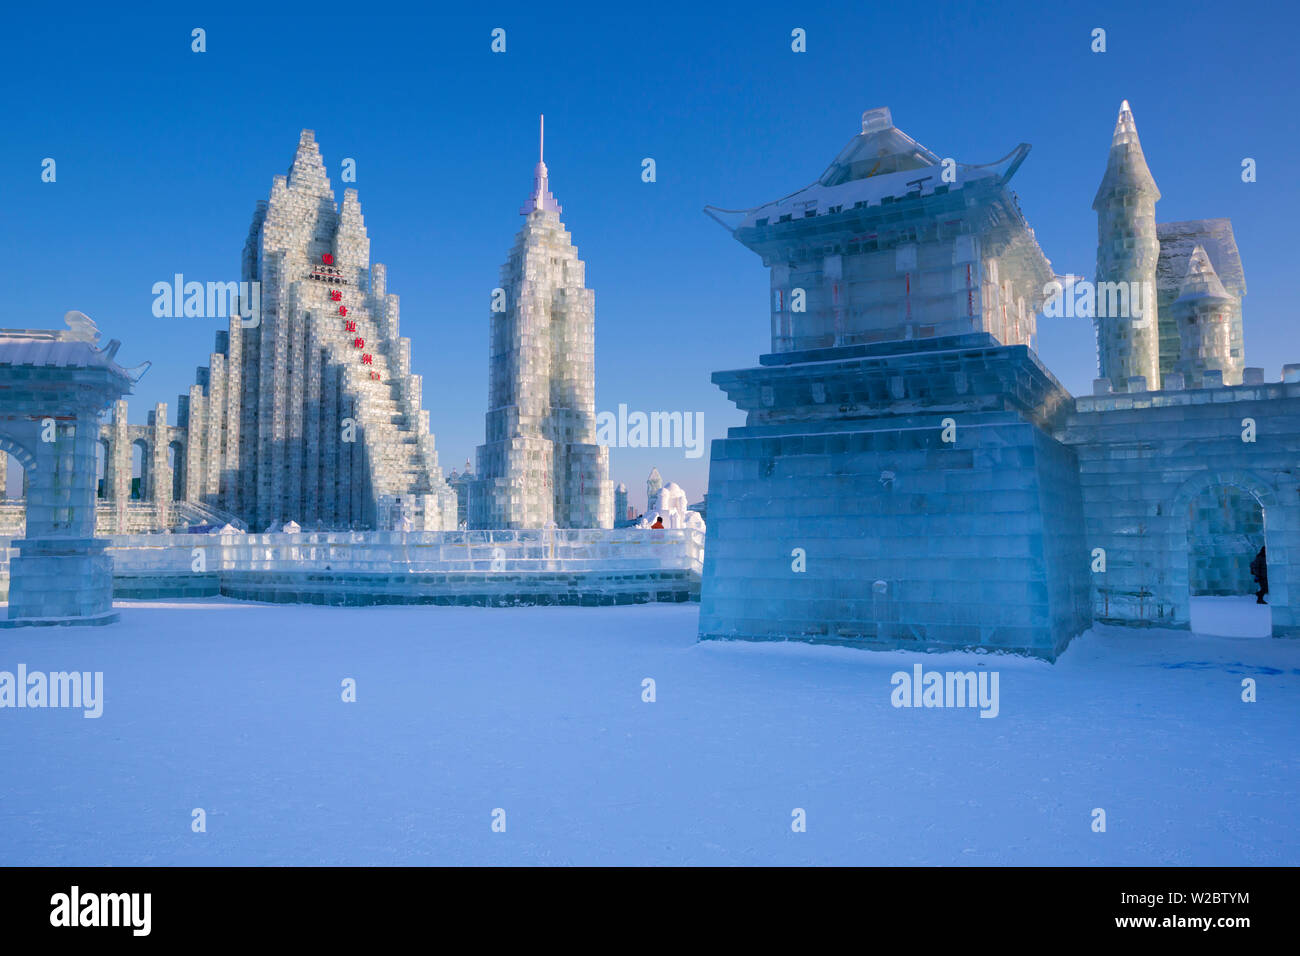 Spektakuläre Eisskulpturen am Eis und Schnee Festival Harbin in der Provinz Heilongjiang, Harbin, China Stockfoto